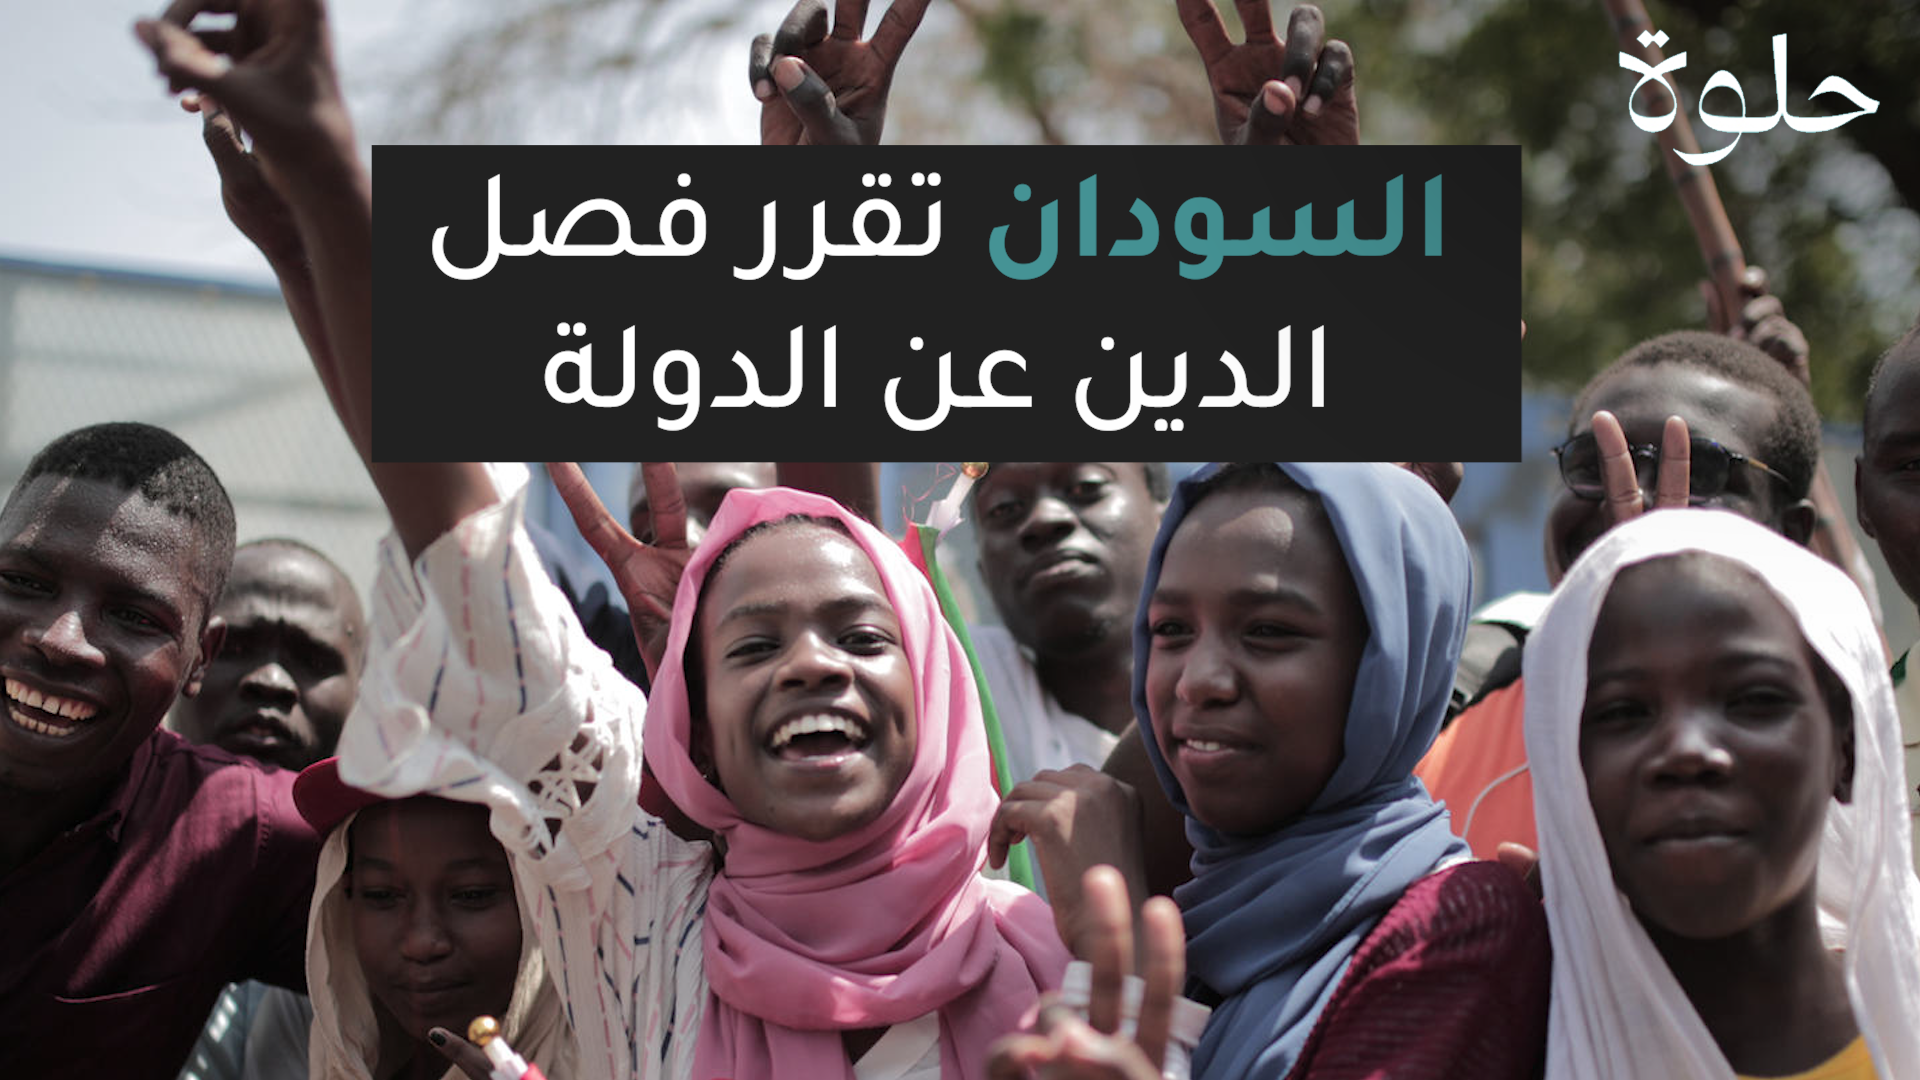 السودان تقرر فصل الدين عن الدولة